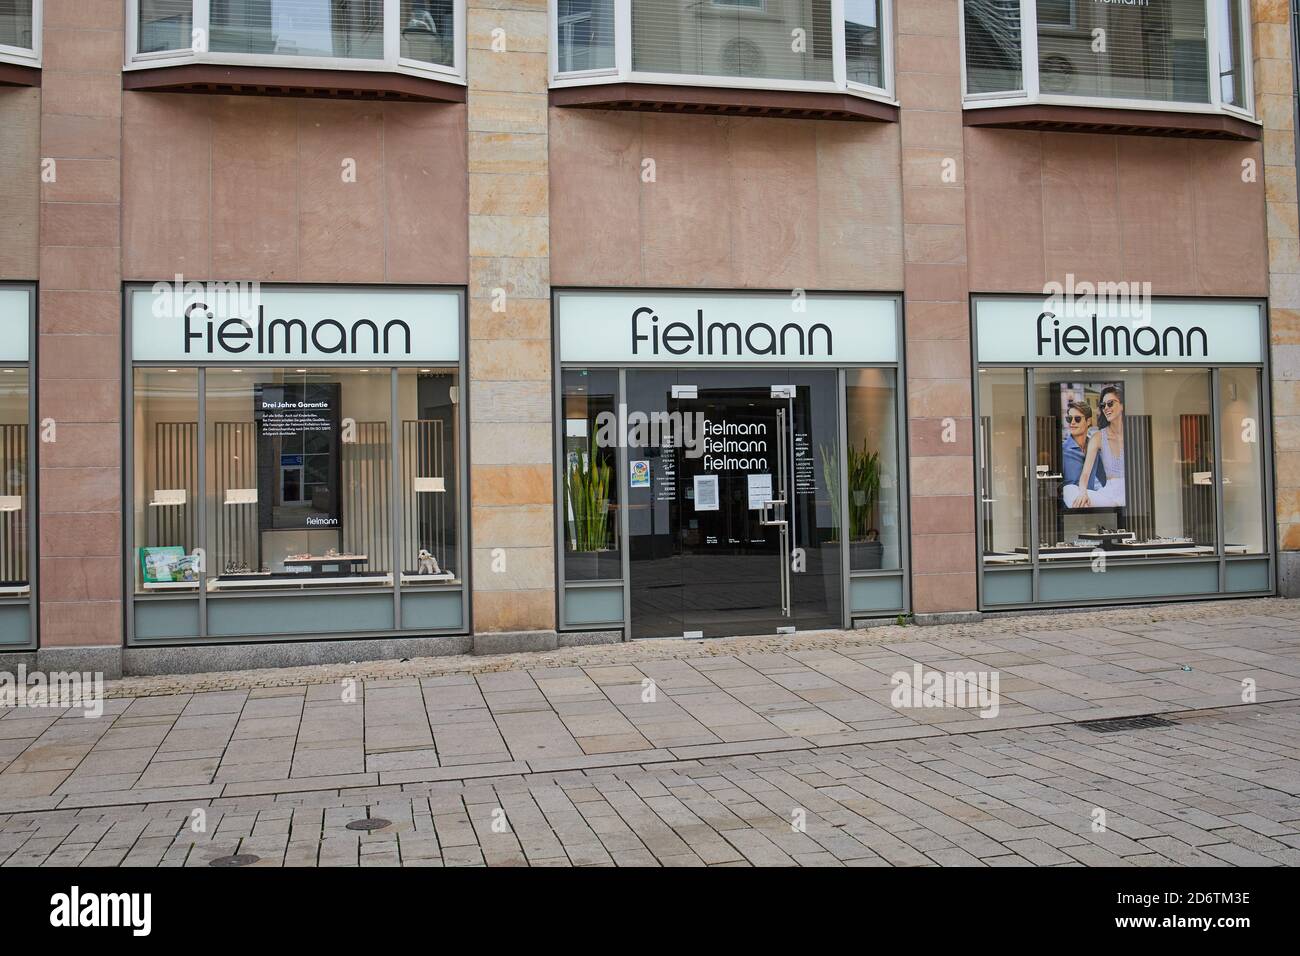 Wiesbaden, 18. Oktober 2020: Fielmann-Laden in der Stadt Wiesbaden. Fielmann  ist die größte optische Kette Europas Stockfotografie - Alamy